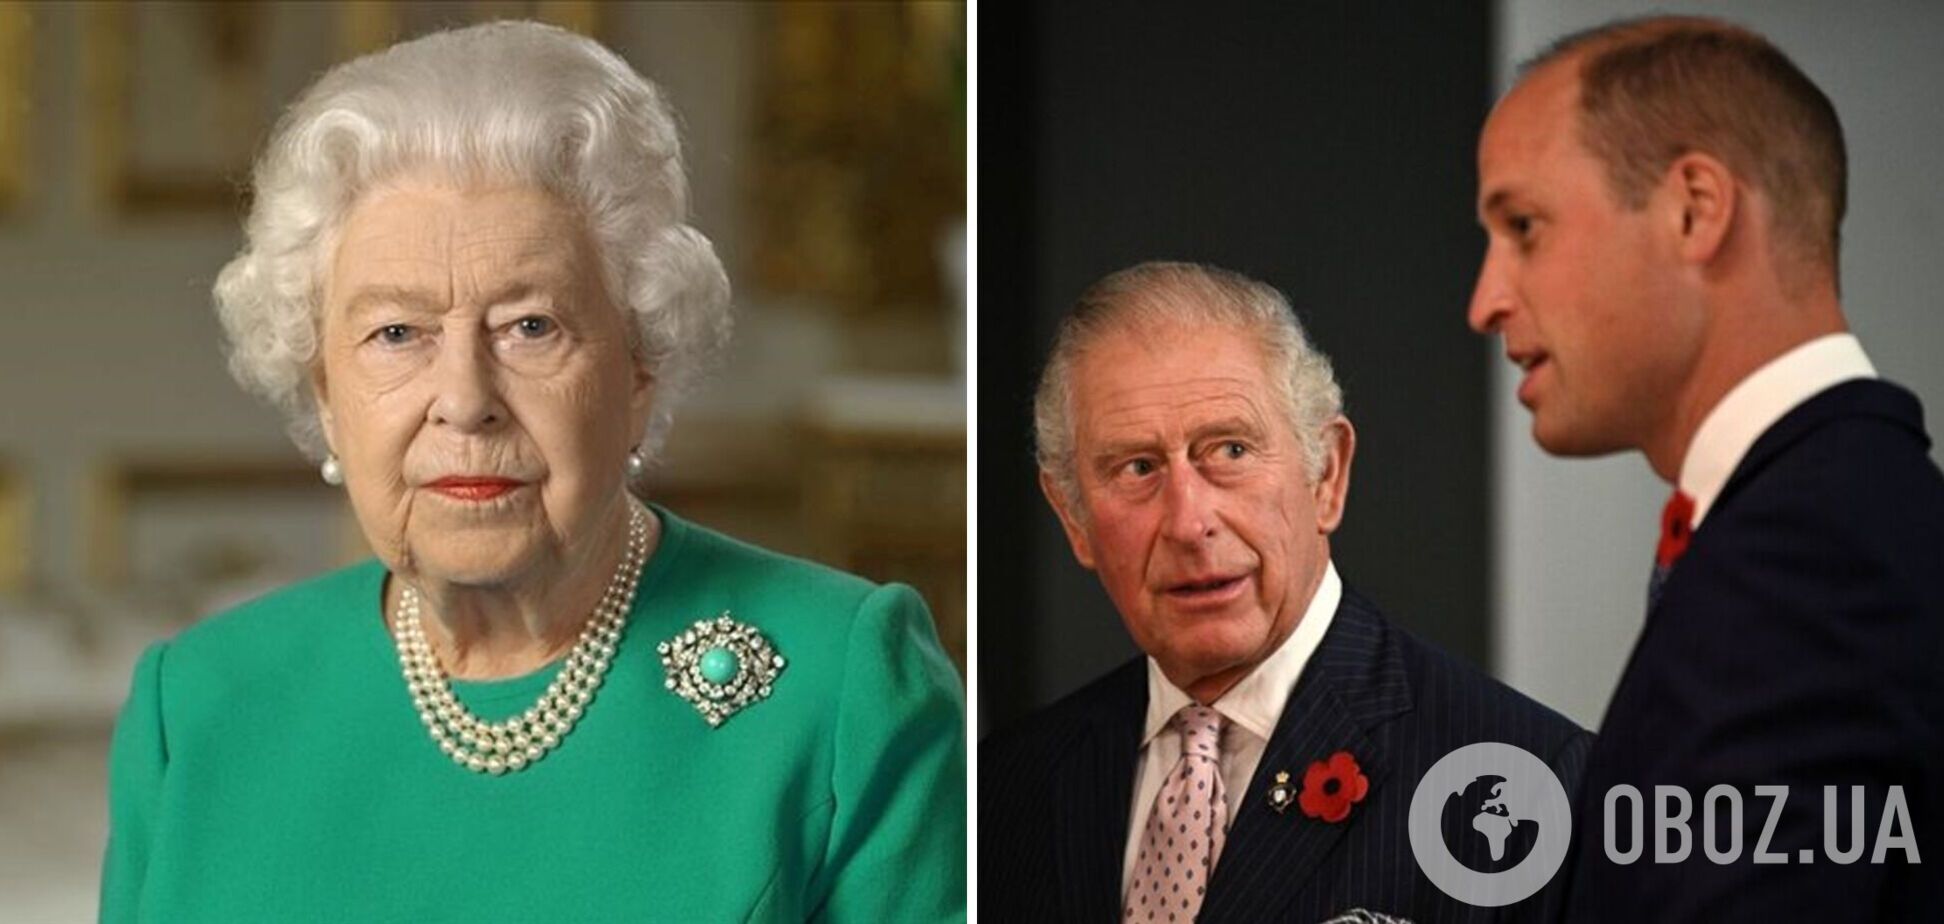 Состояние здоровья Елизаветы II ухудшилось: дети и внуки королевы едут в Шотландию